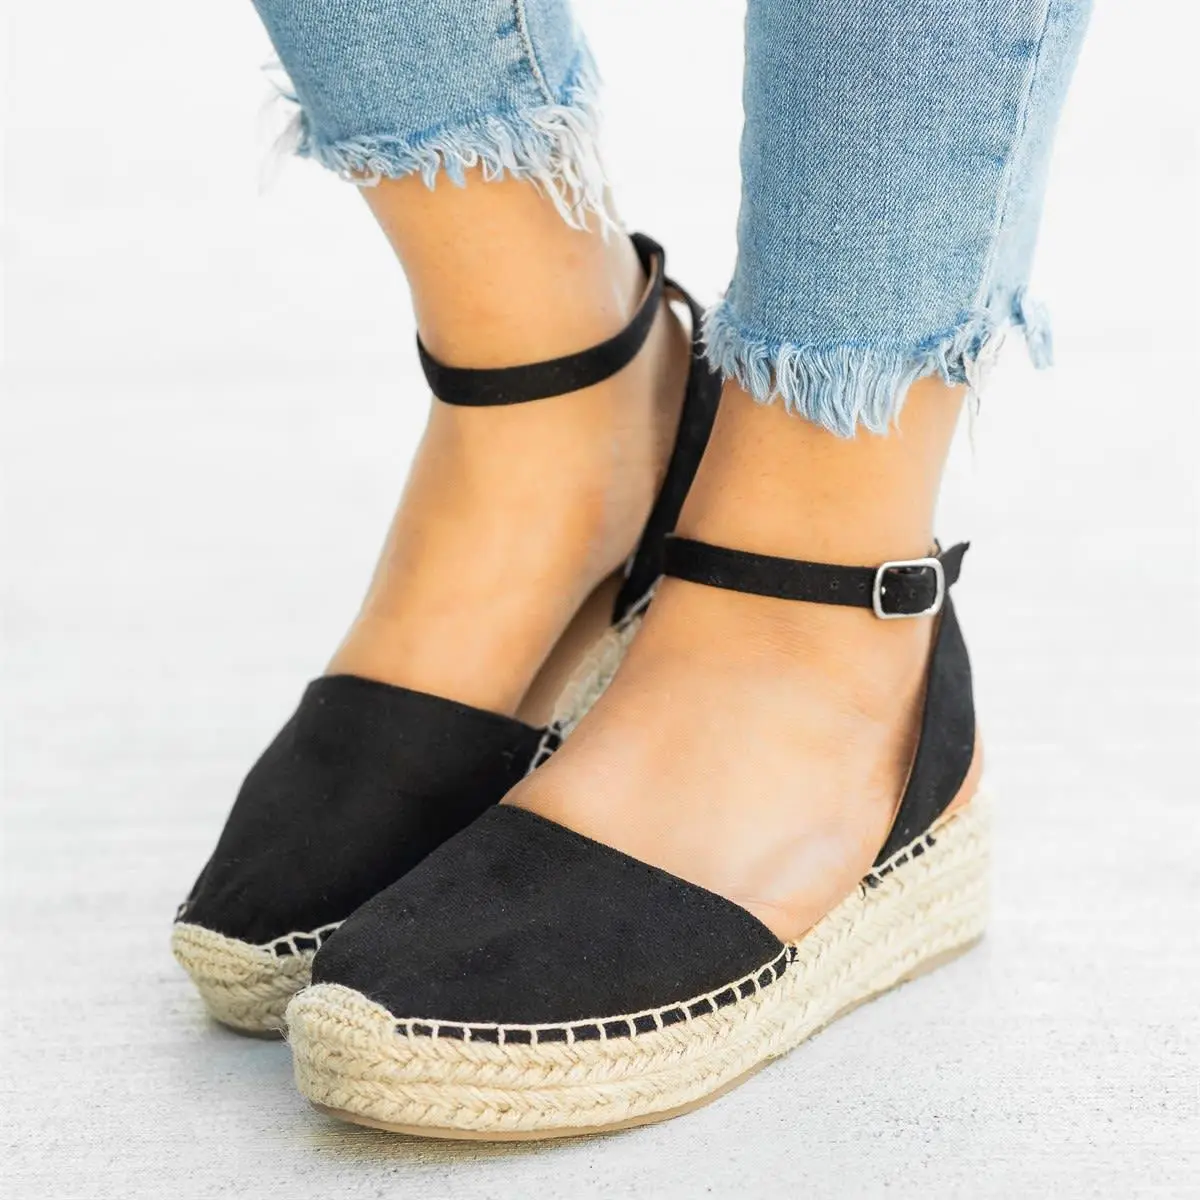 WENYUJH Women Hemp Platform Sandals Summer Slip On Wedge Shoes Female ...